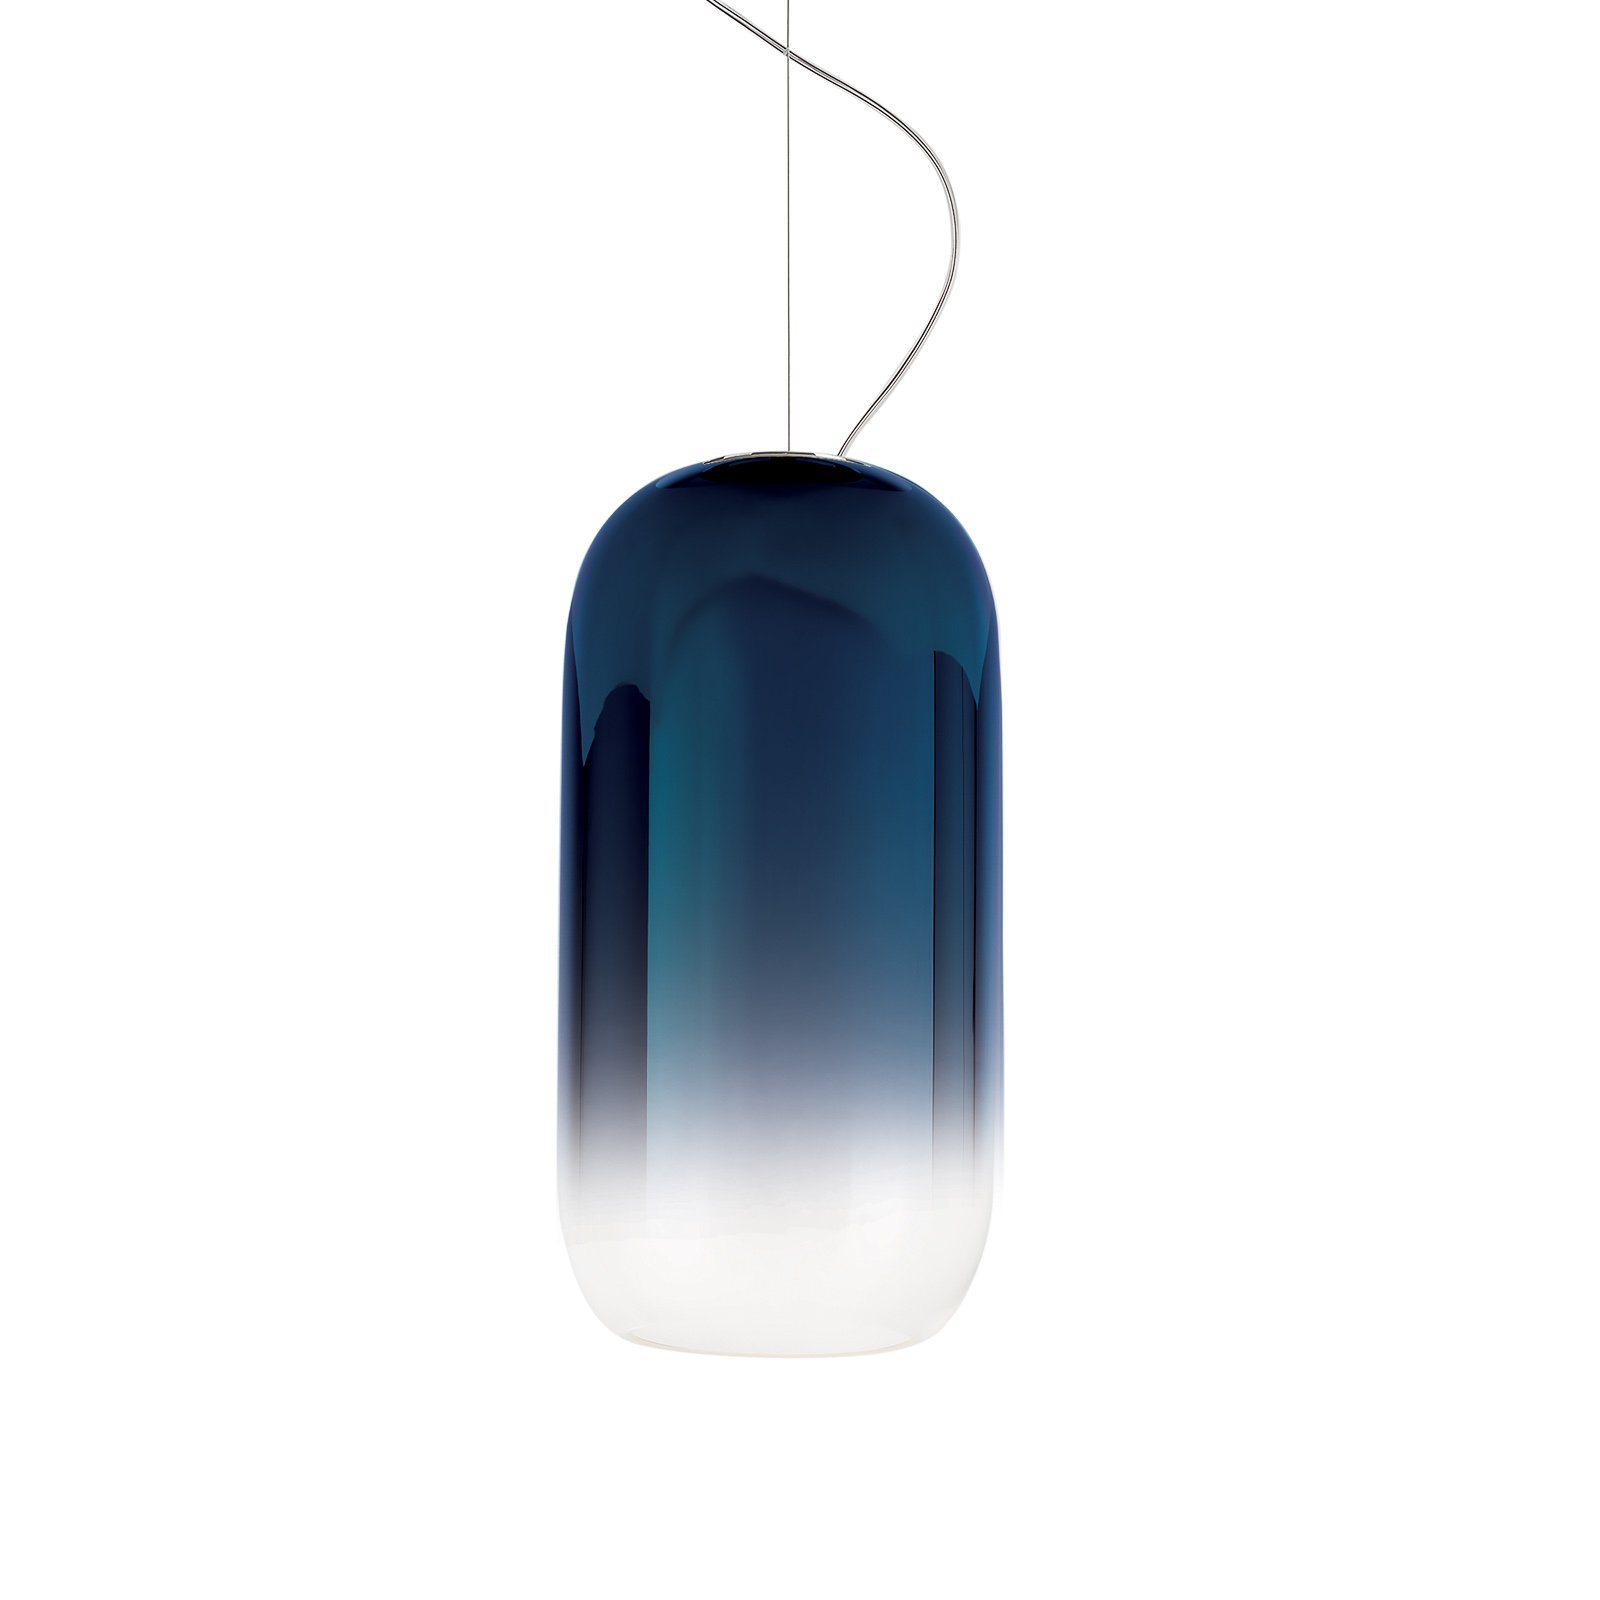 Artemide Gople hanglamp blauw/zilver